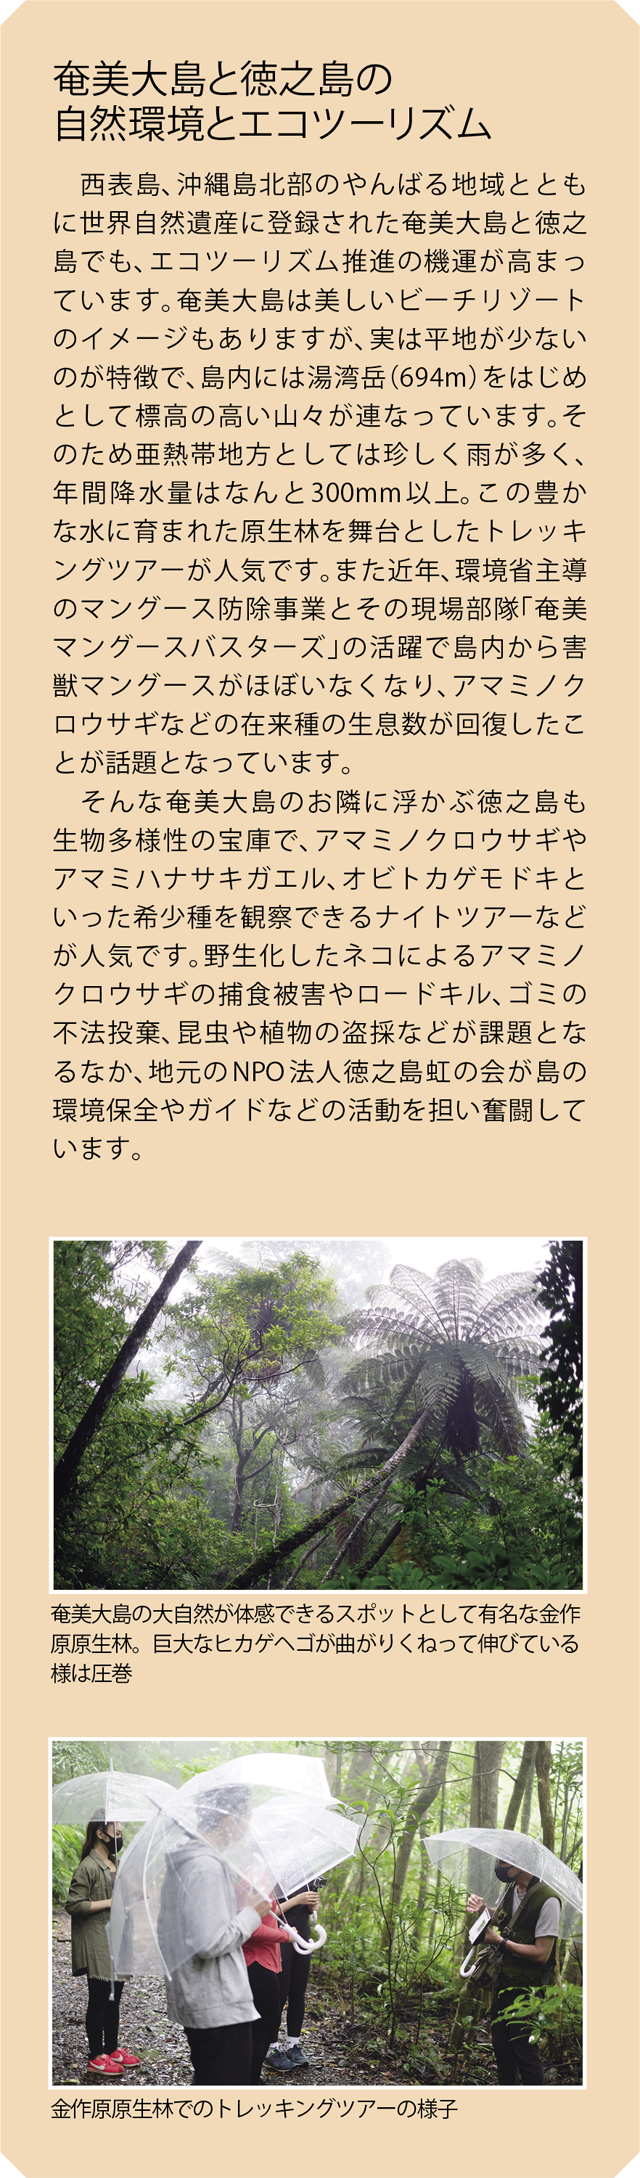 奄美大島と徳之島の自然環境とエコツーリズム